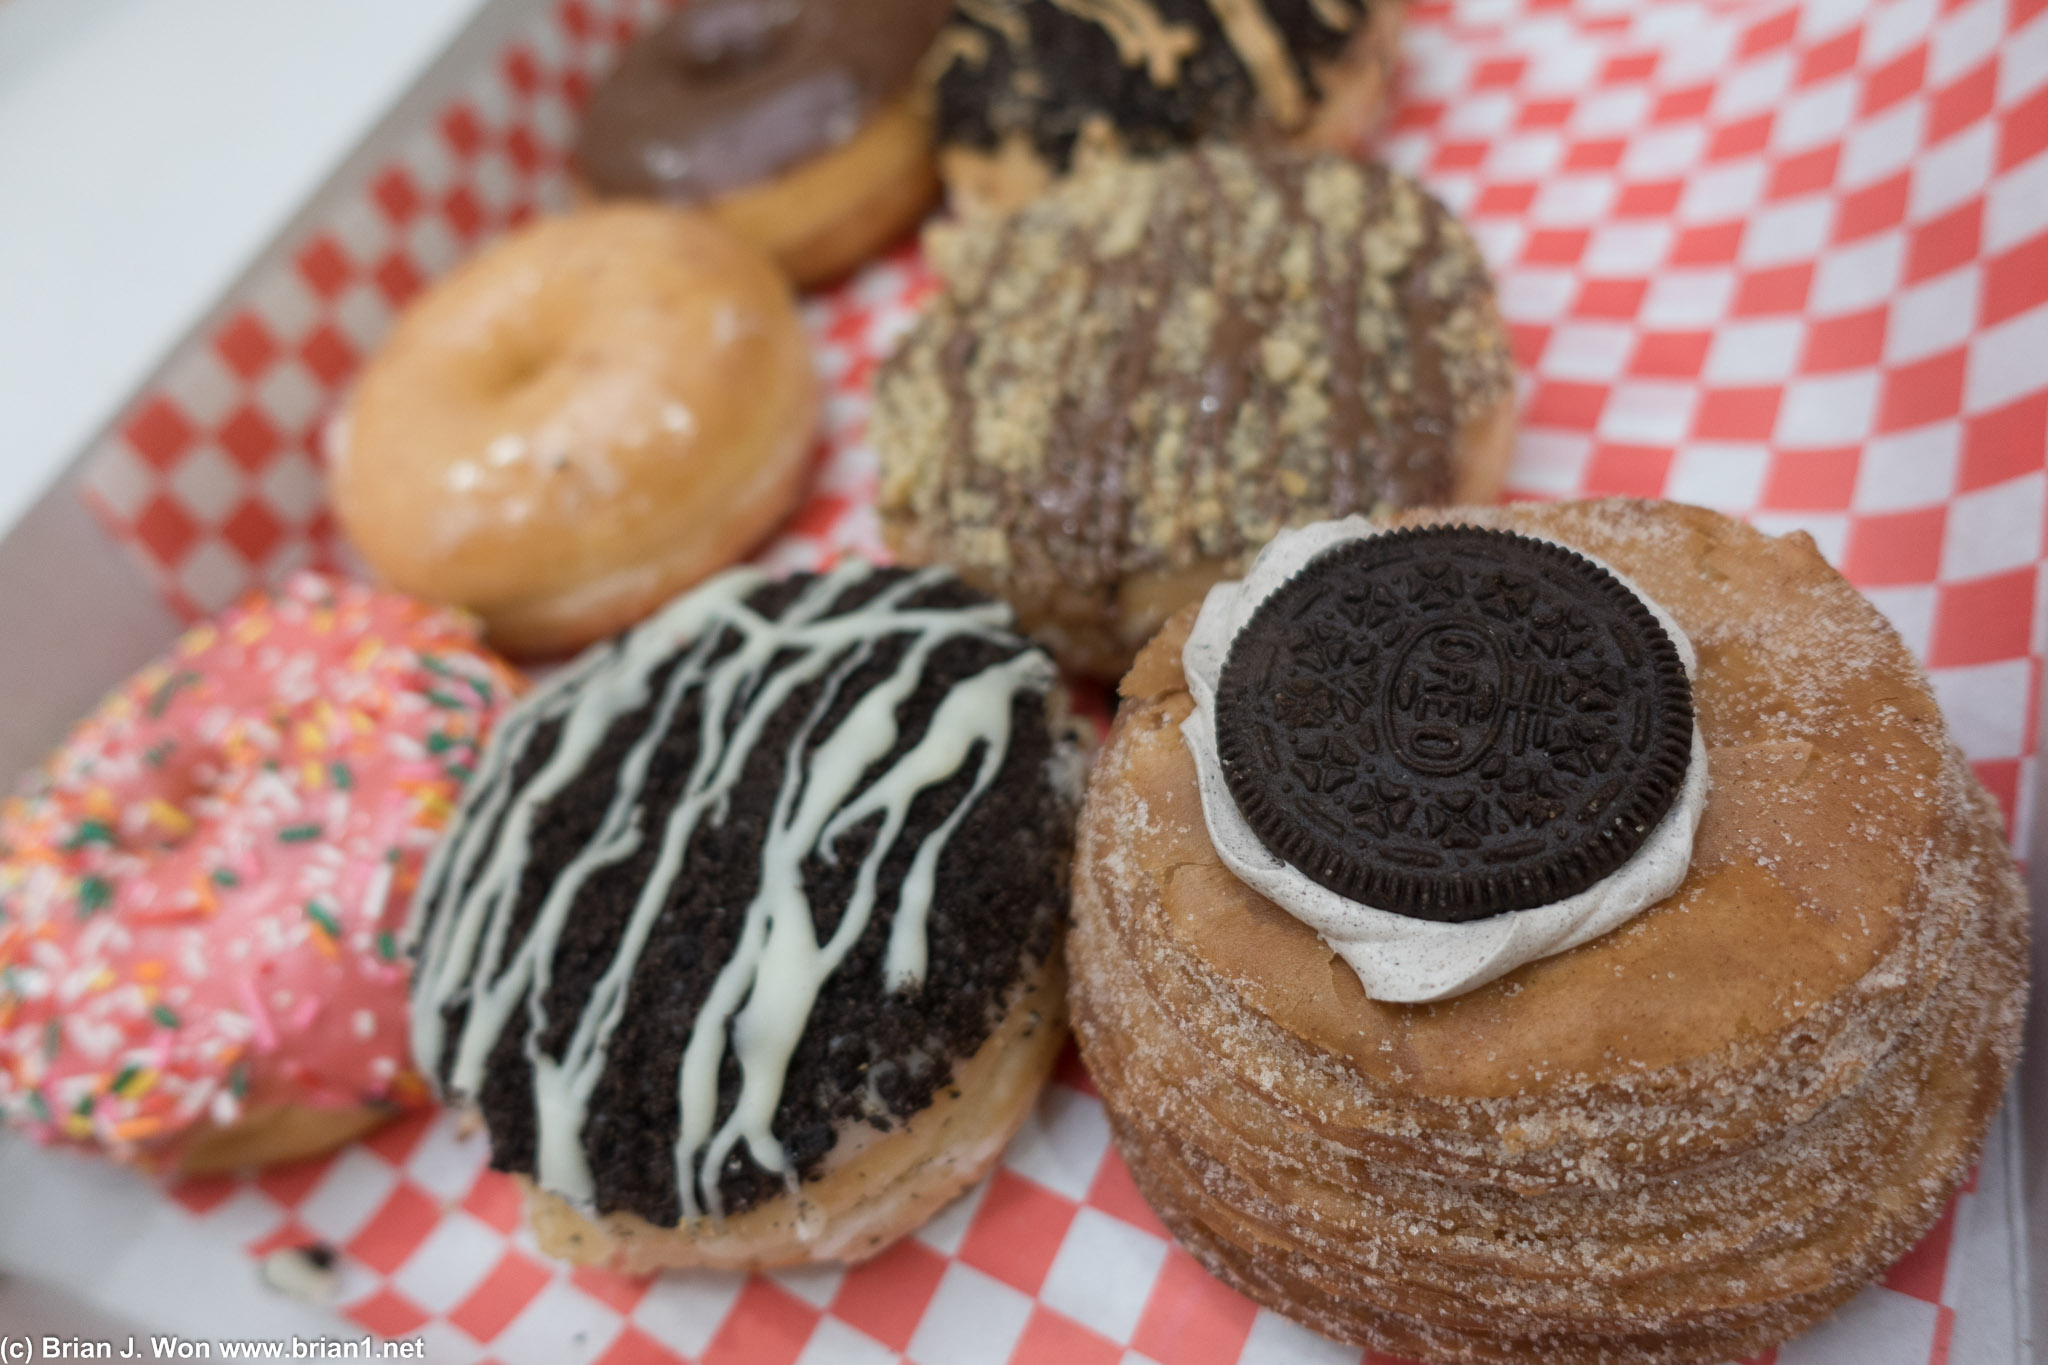 Mmmm donuts.